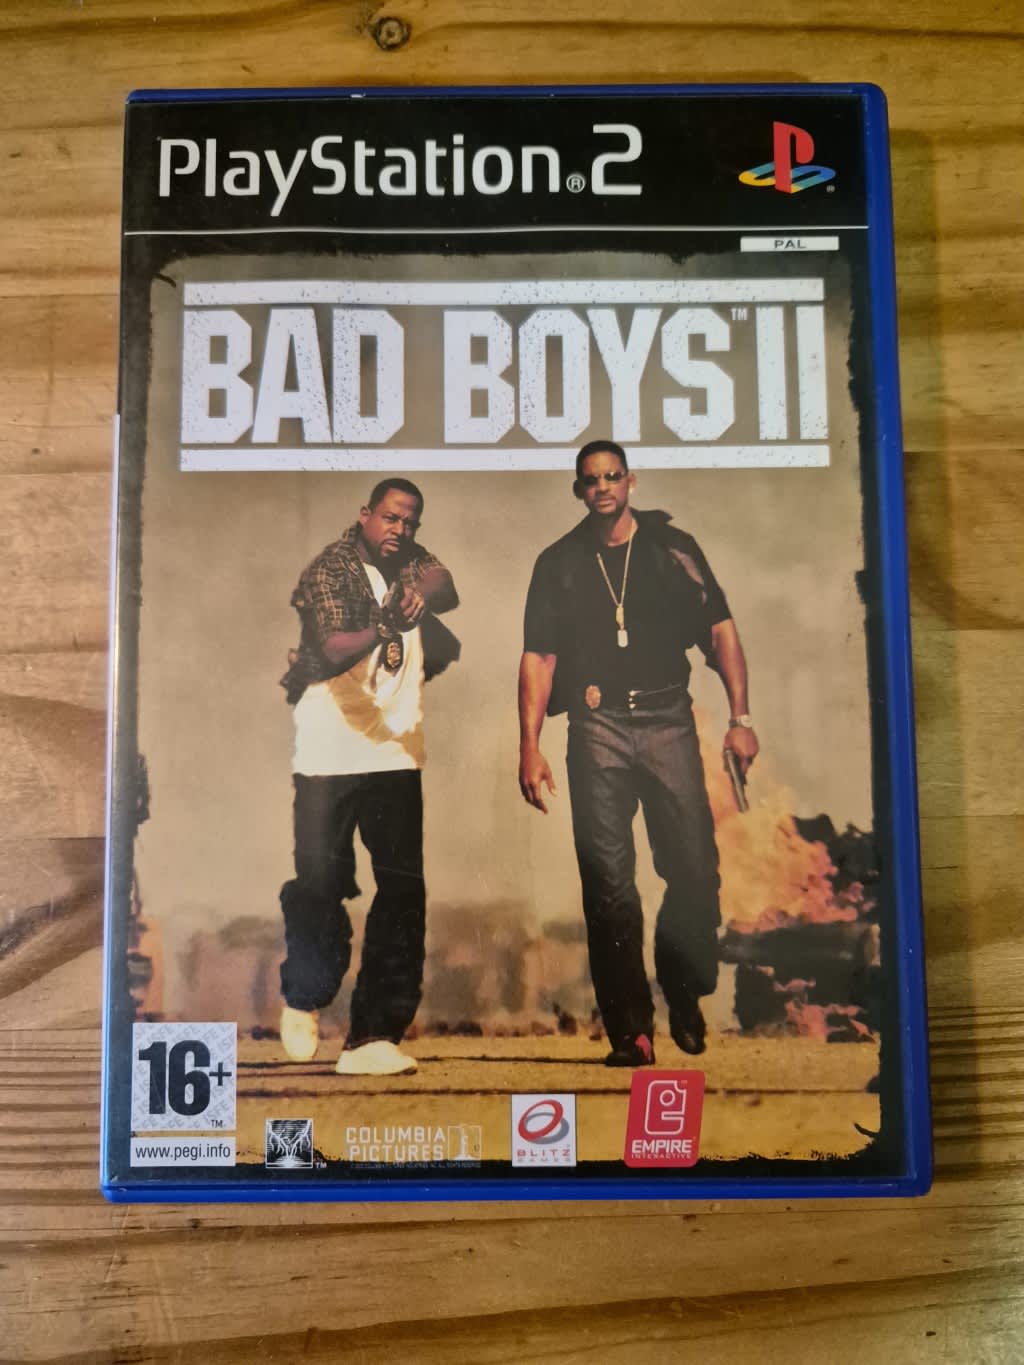 Bad Boys II (PS2)